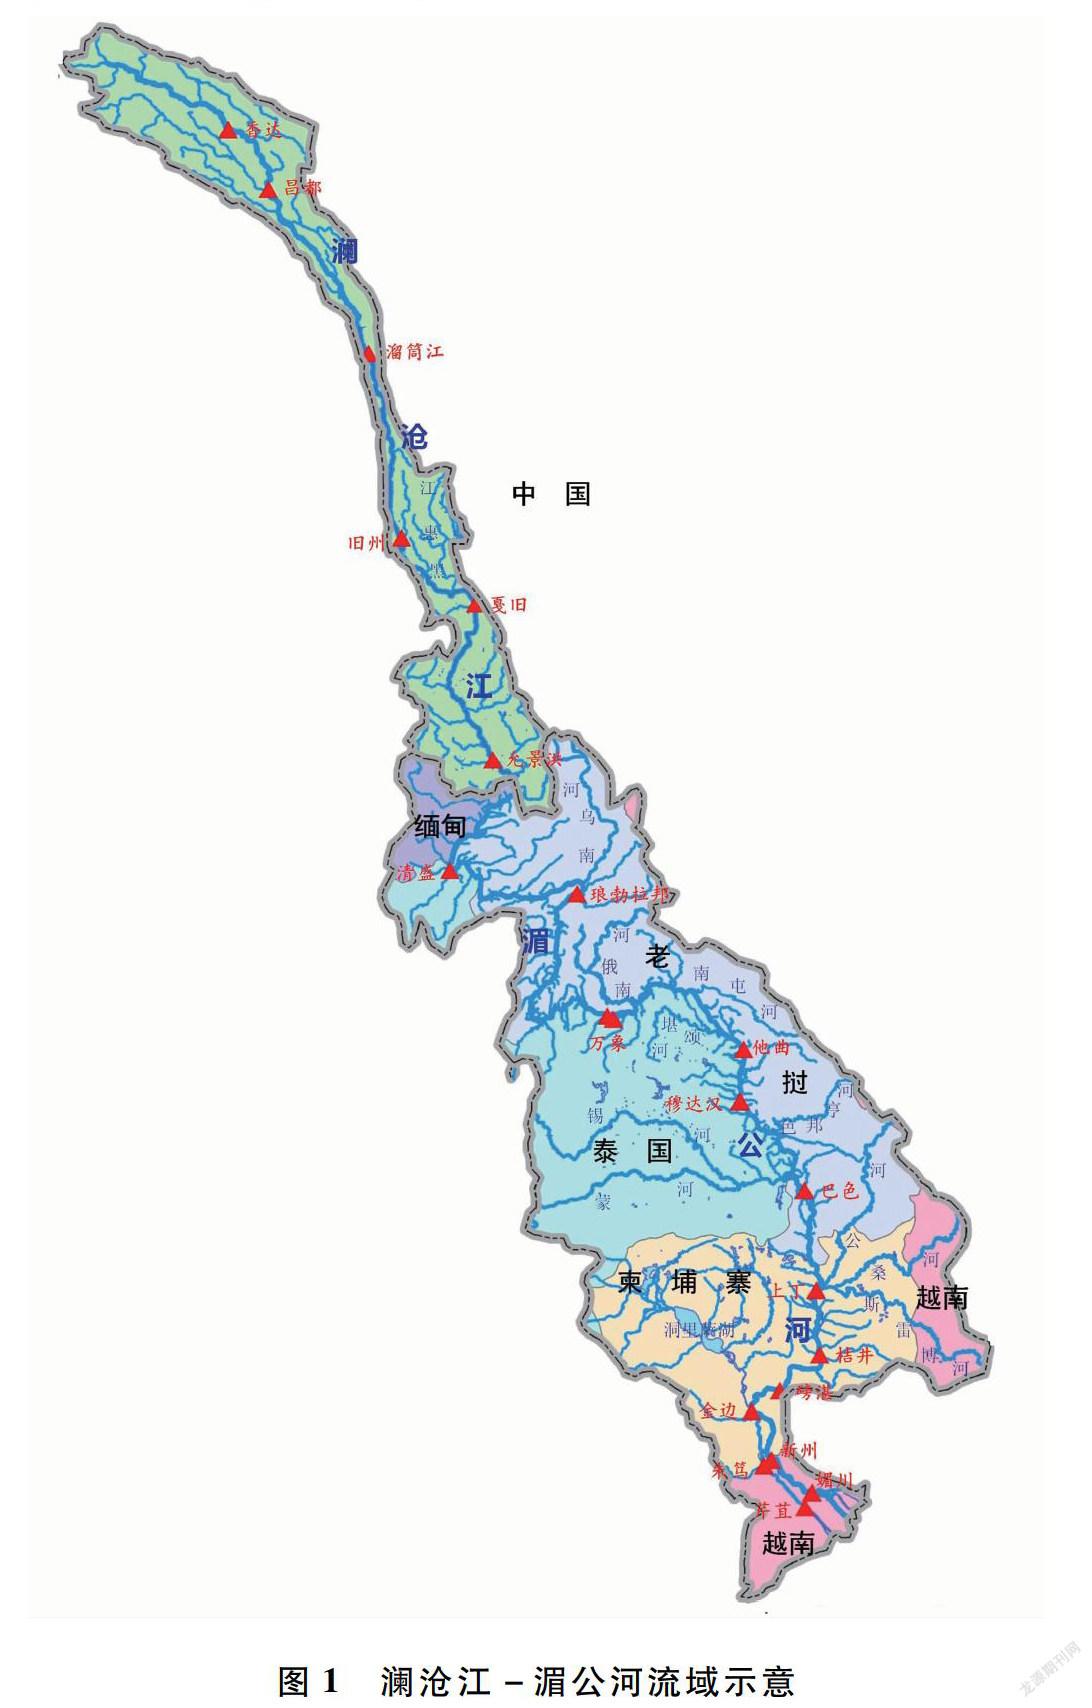 湄公河干流洪水洪灾特点及防洪对策研究